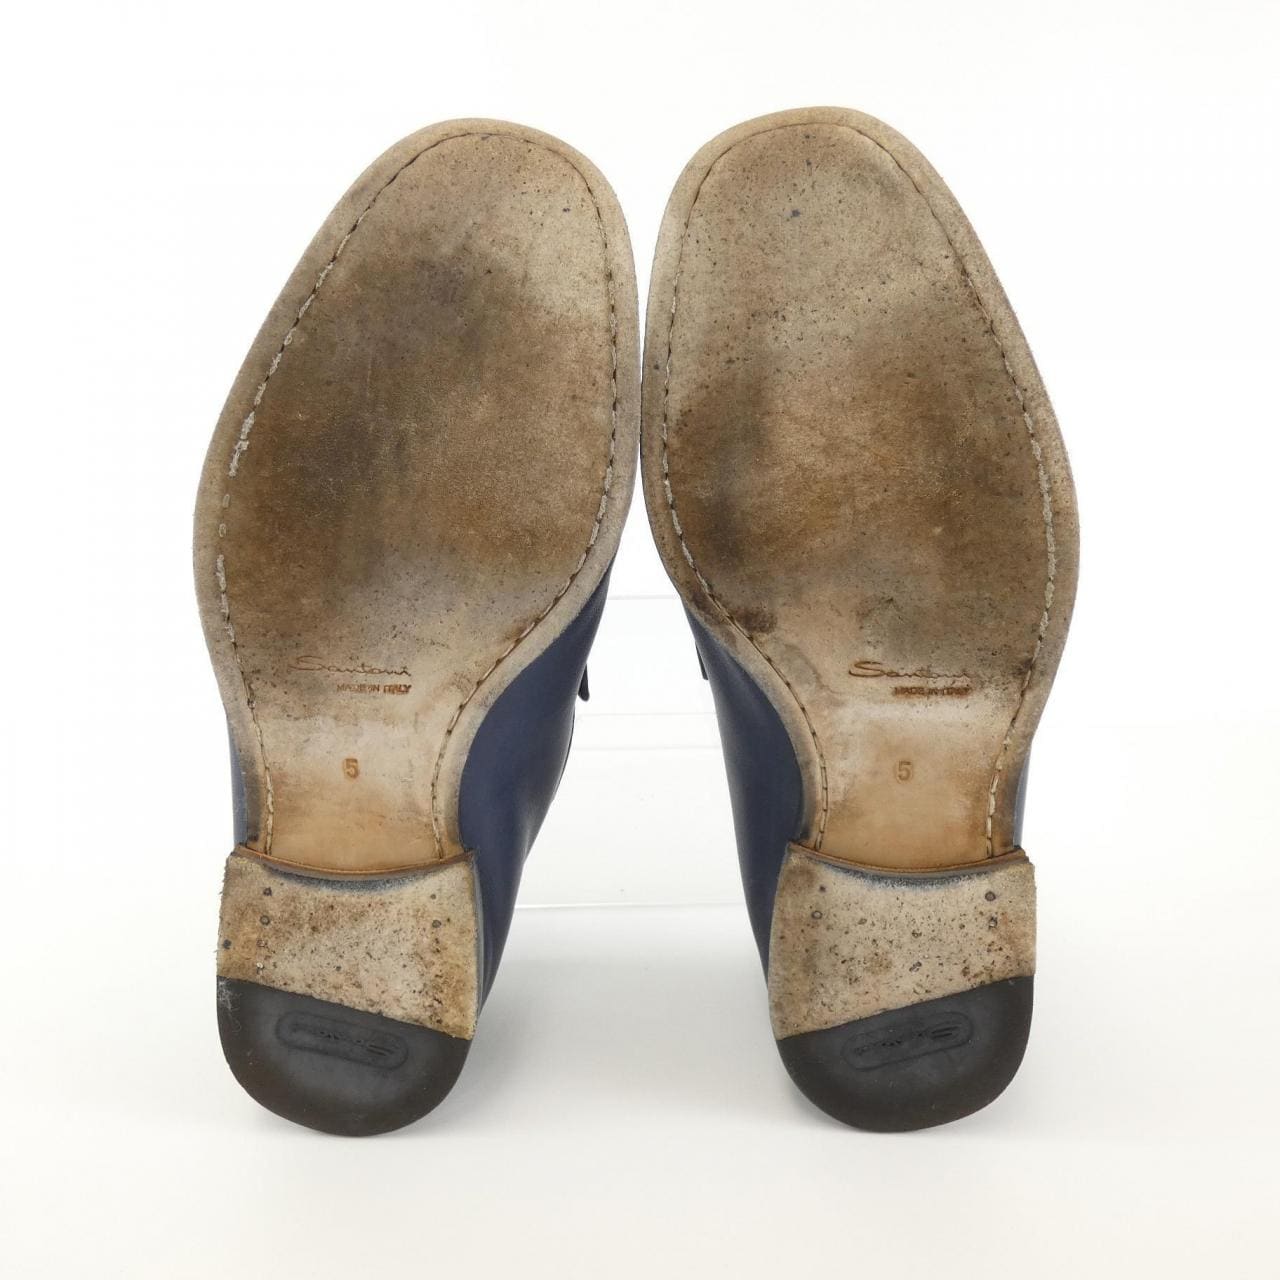 Santoni SANTONI shoes